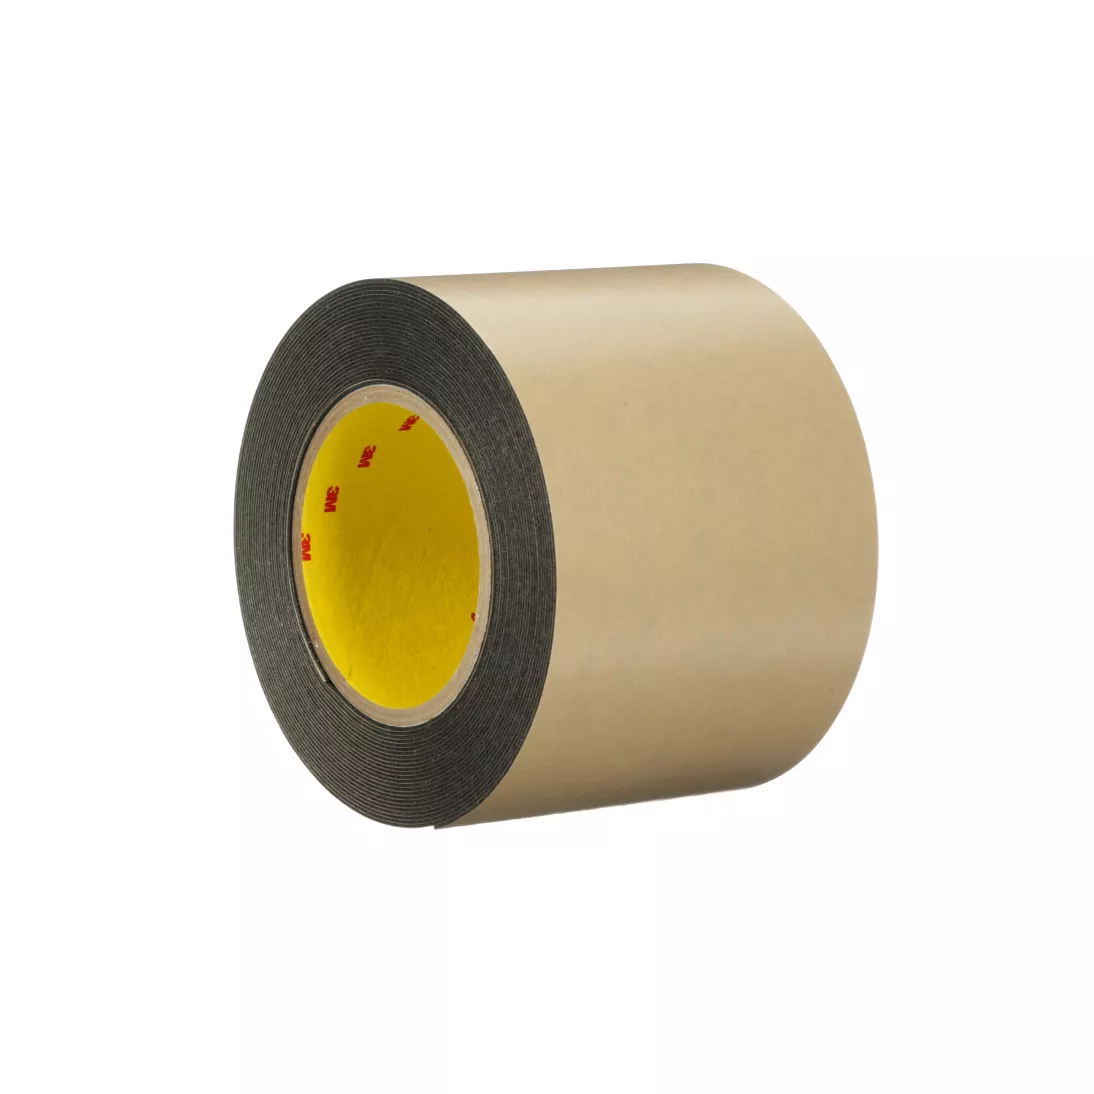 3M™ Double Coated Polyethylene Foam Tape 4492B, Black, 18 in x 72 Yds,
31 mil, 1 roll per case